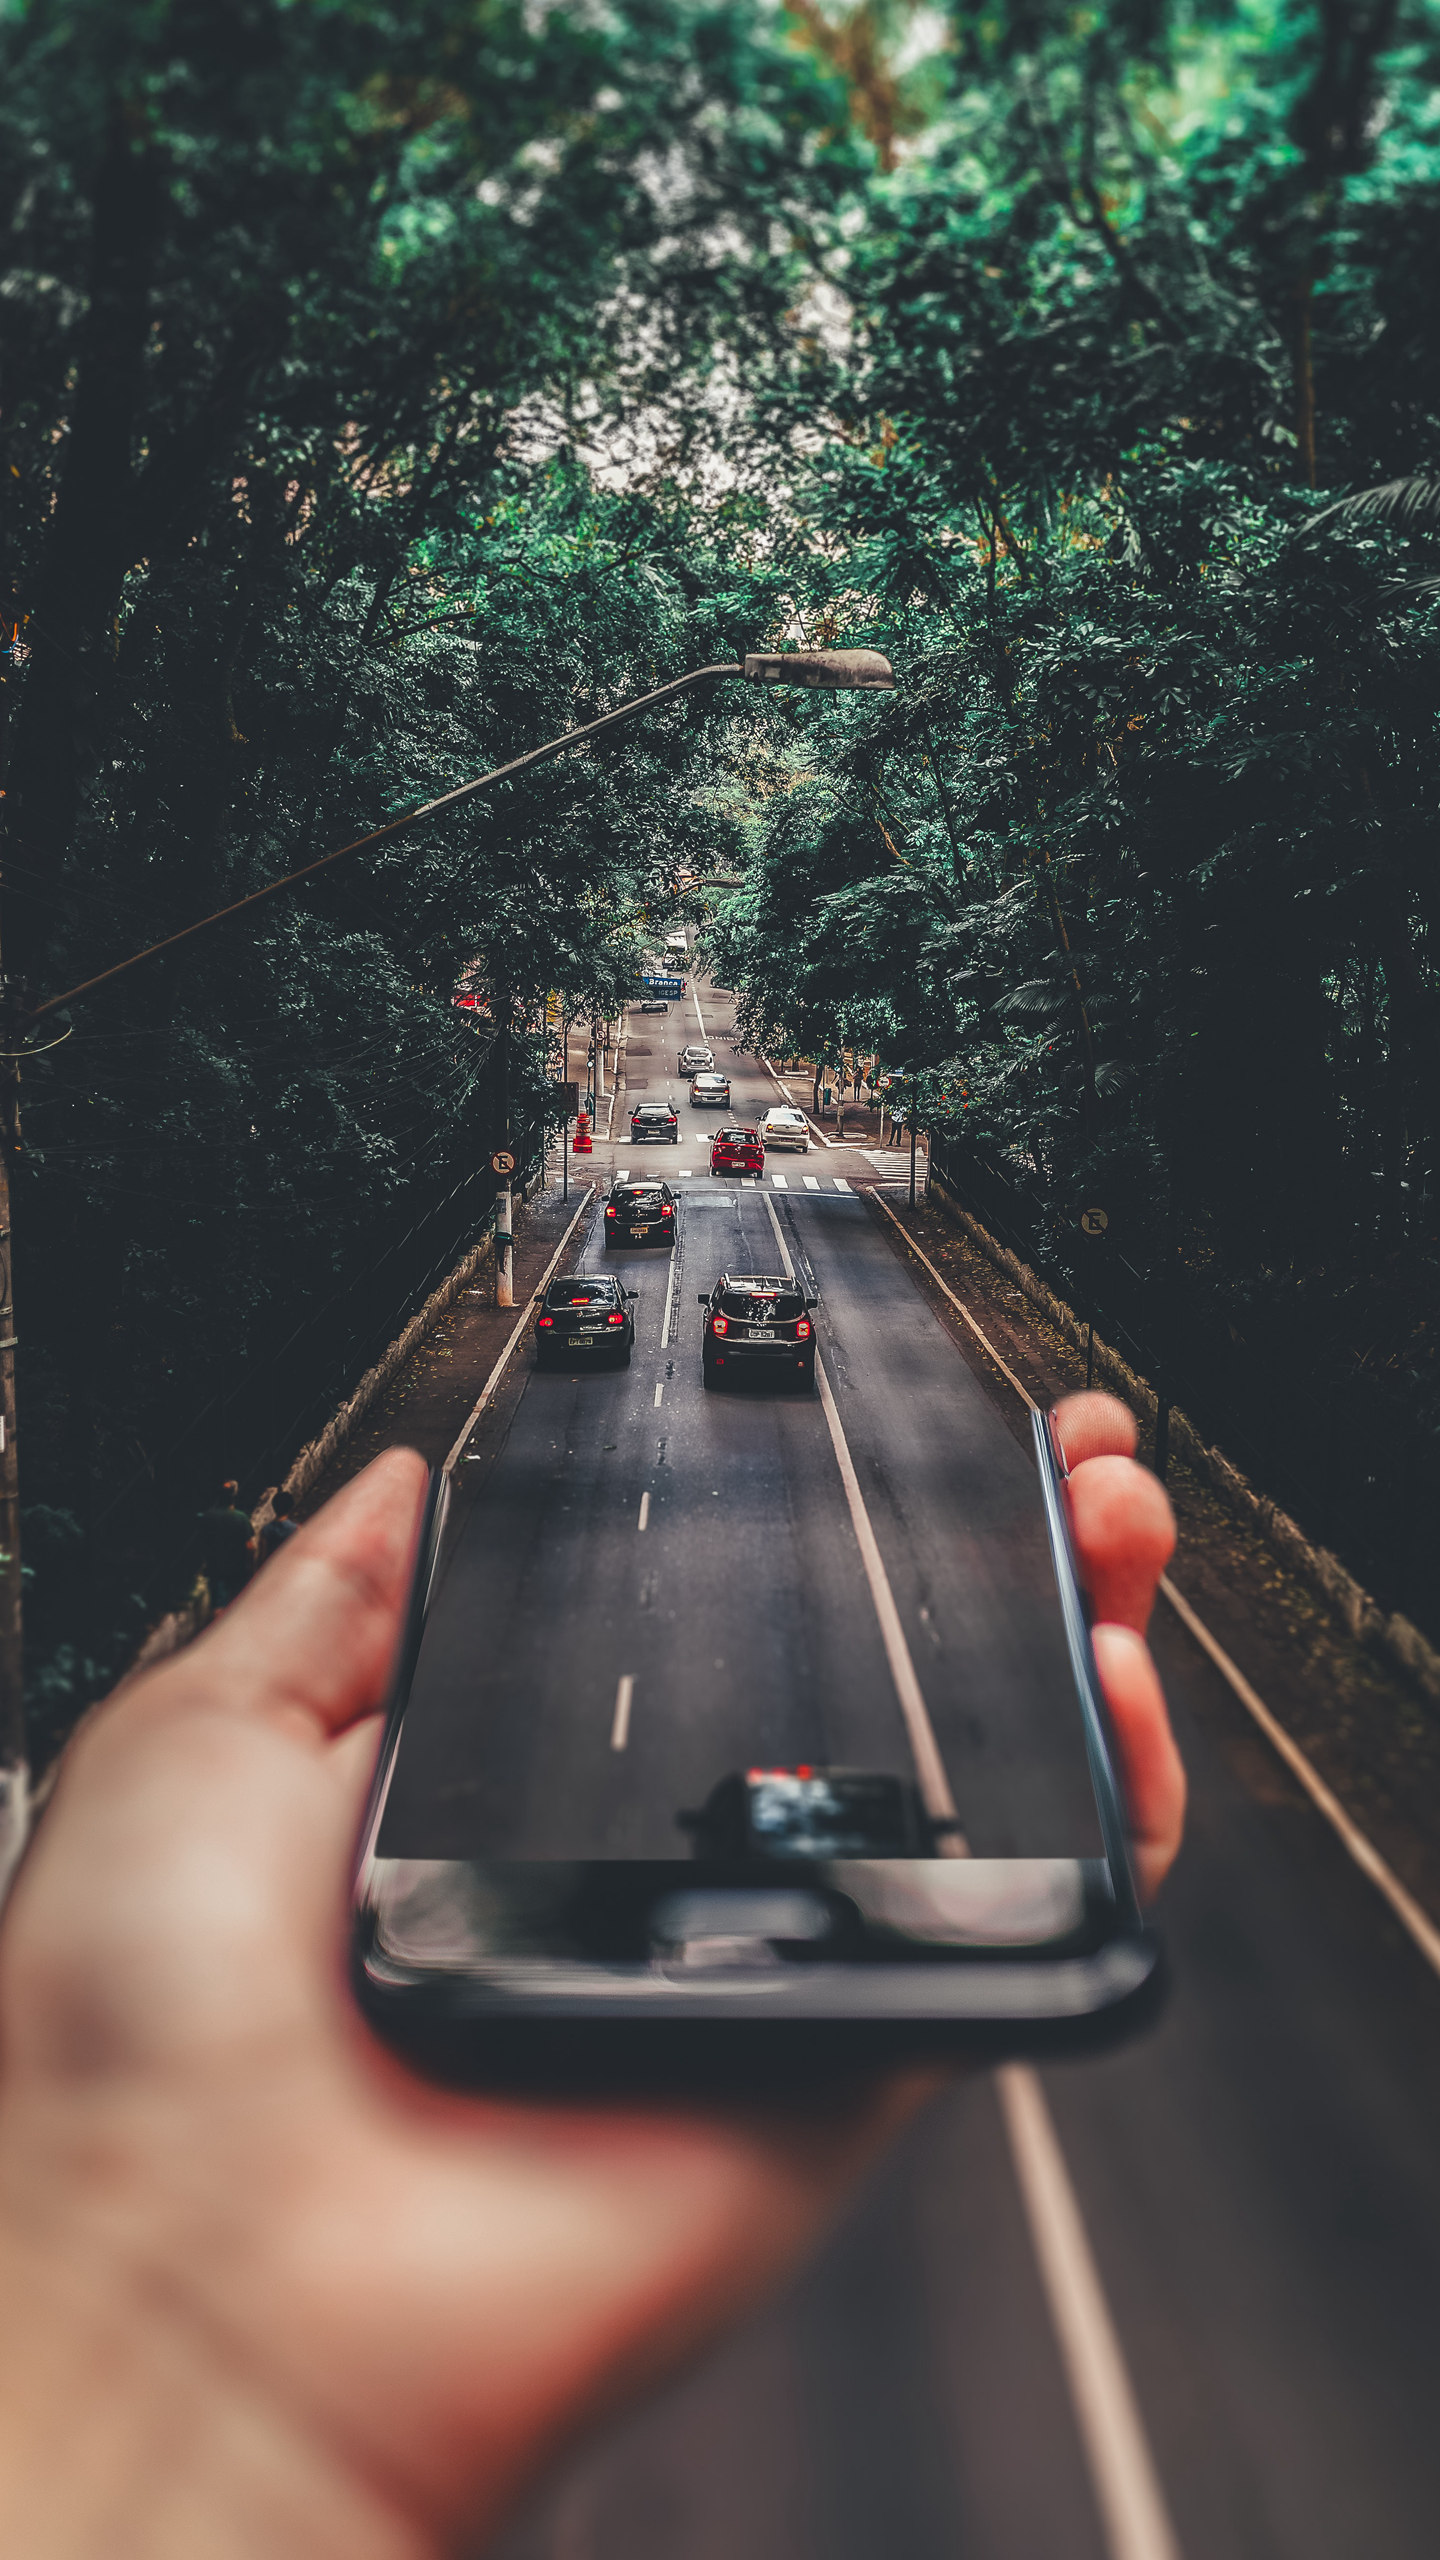 手机和高速公路的错位拍摄创意手机壁纸